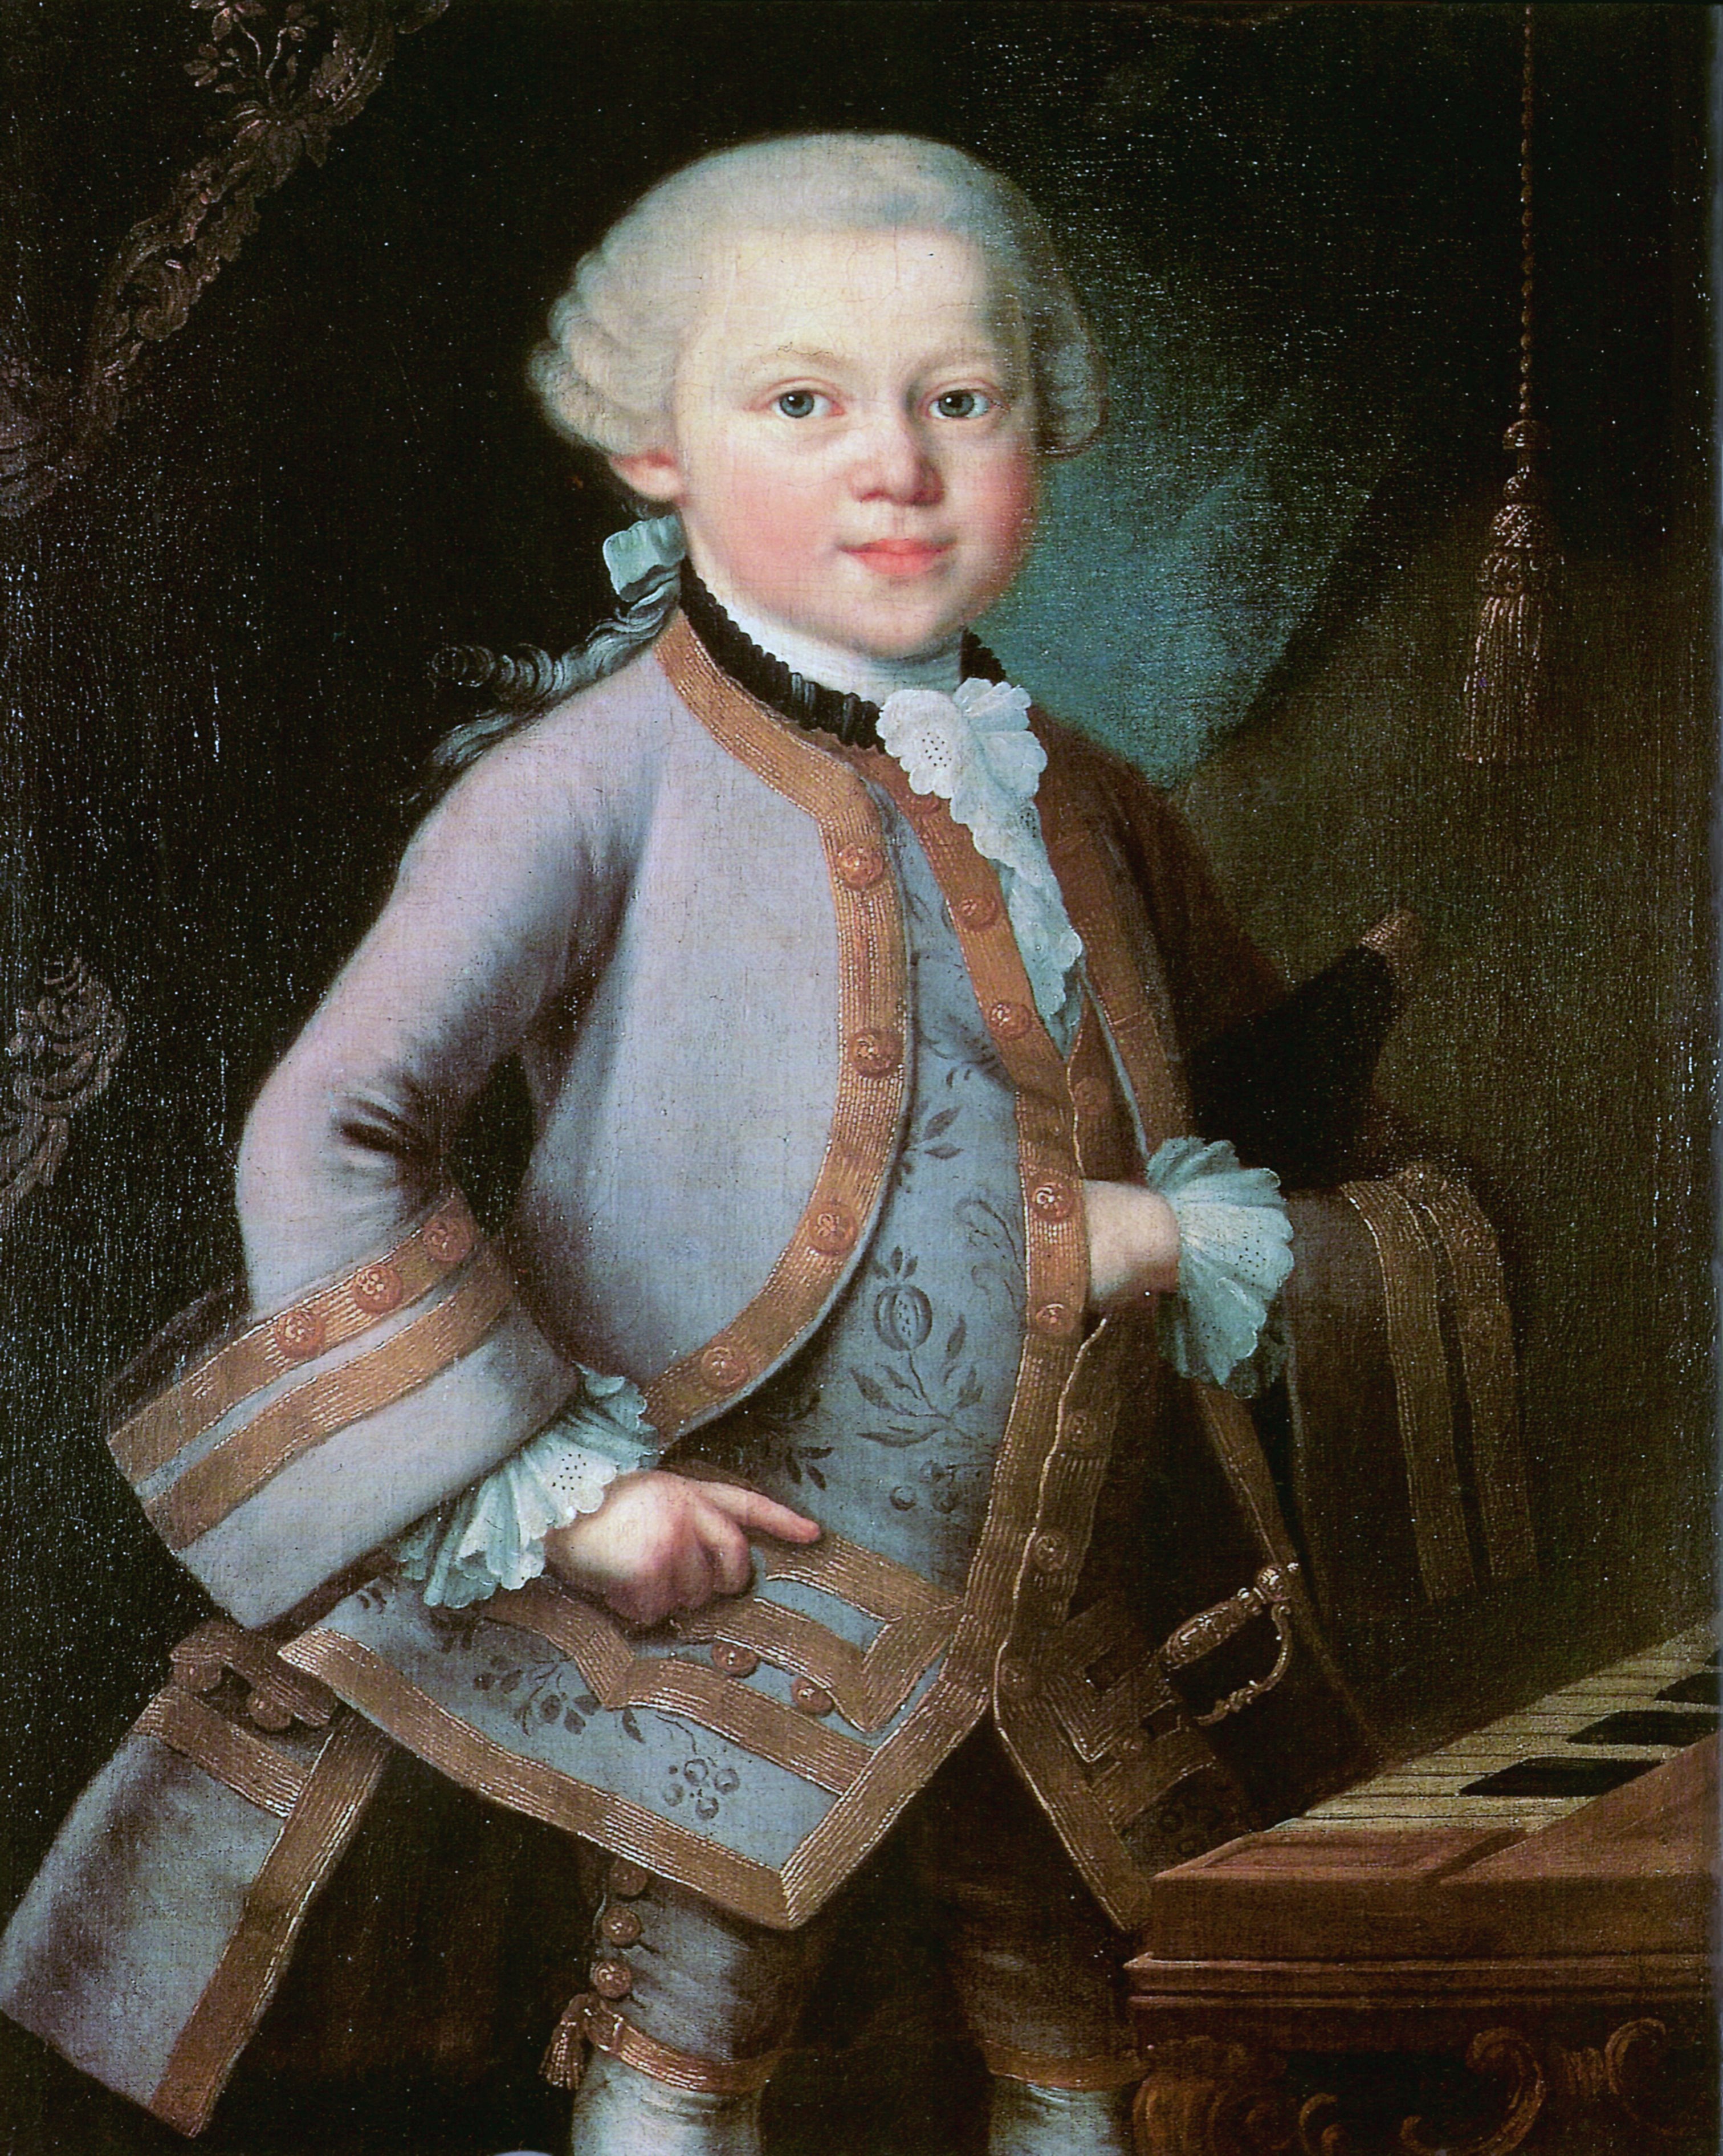 Retrato de Wolfgang Amadeus Mozart pintado por encargo de Leopold Mozart en 1763. El autor es desconocido aunque posiblemente fuera Pietro Antonio Lorenzoni.